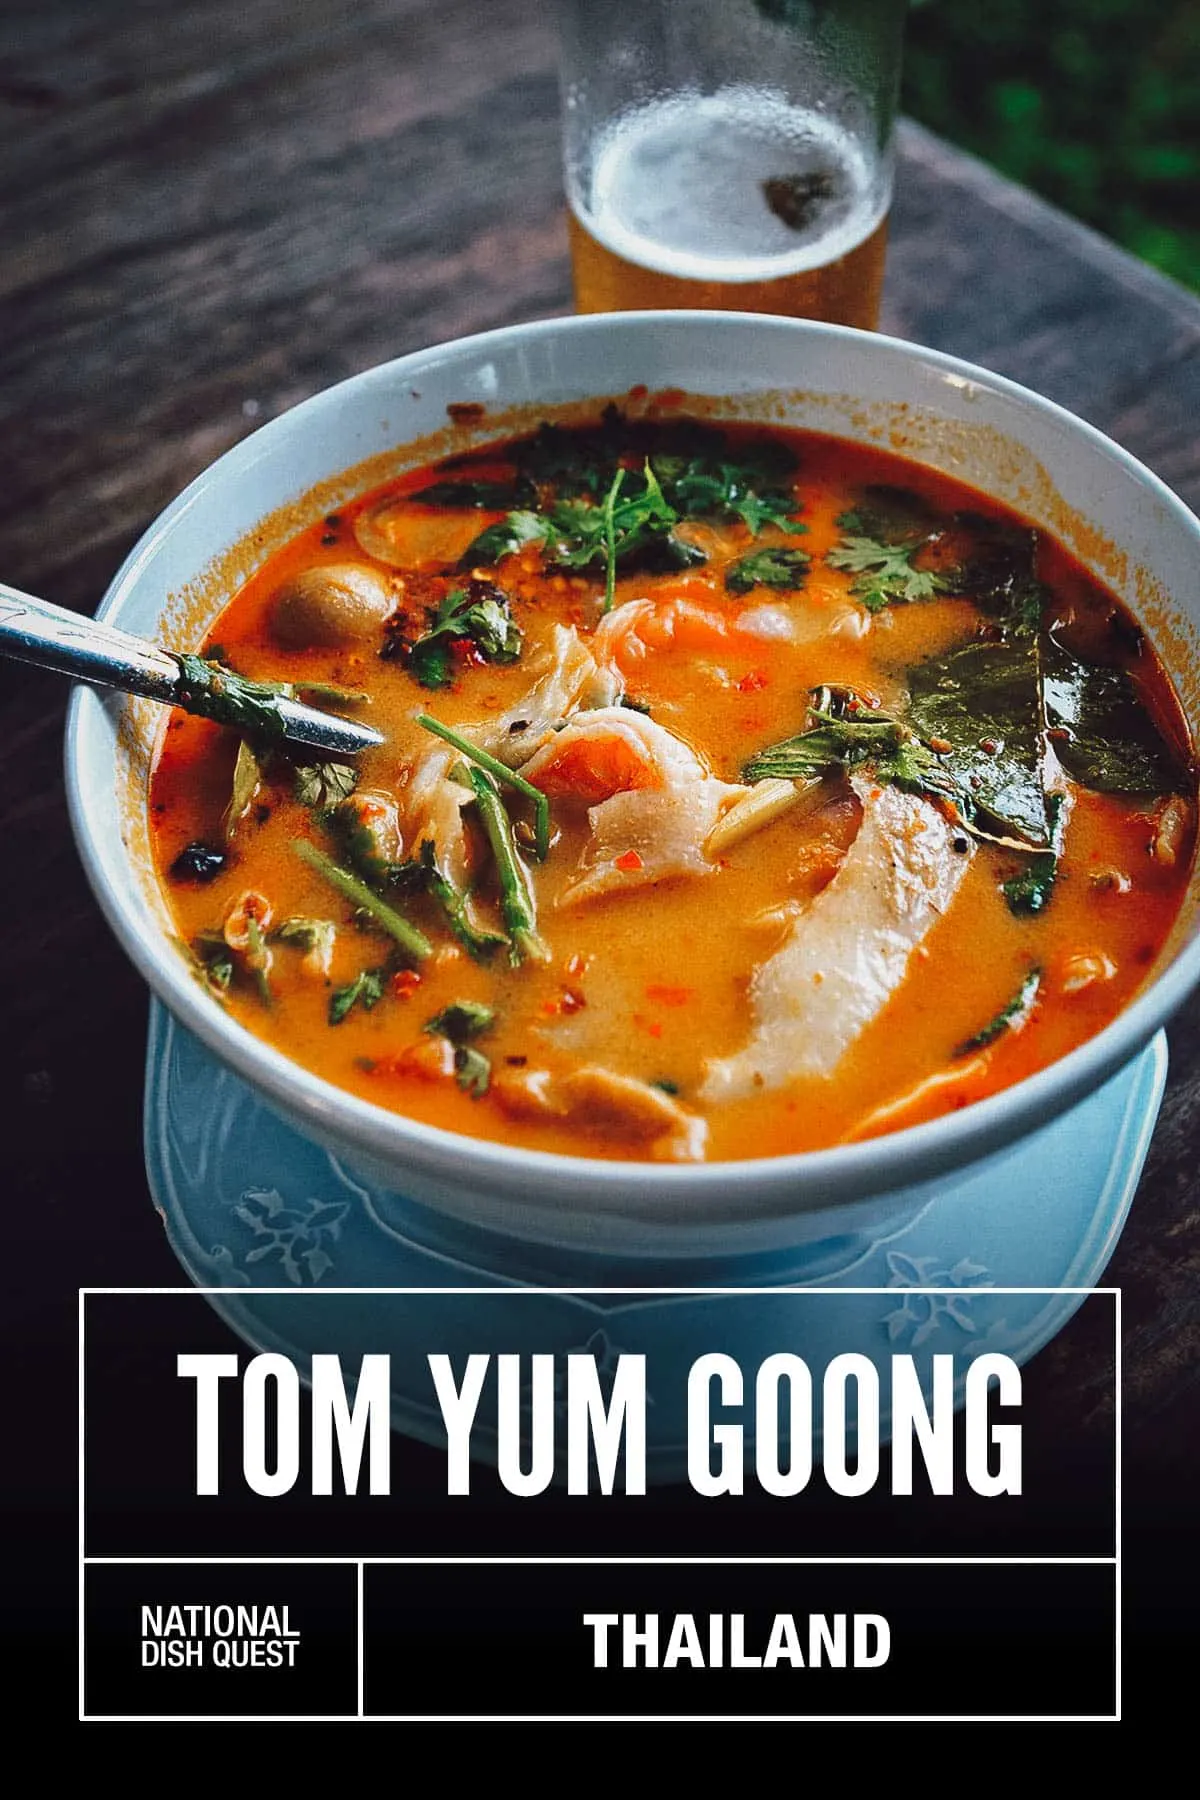 Bowl of tom yum goong